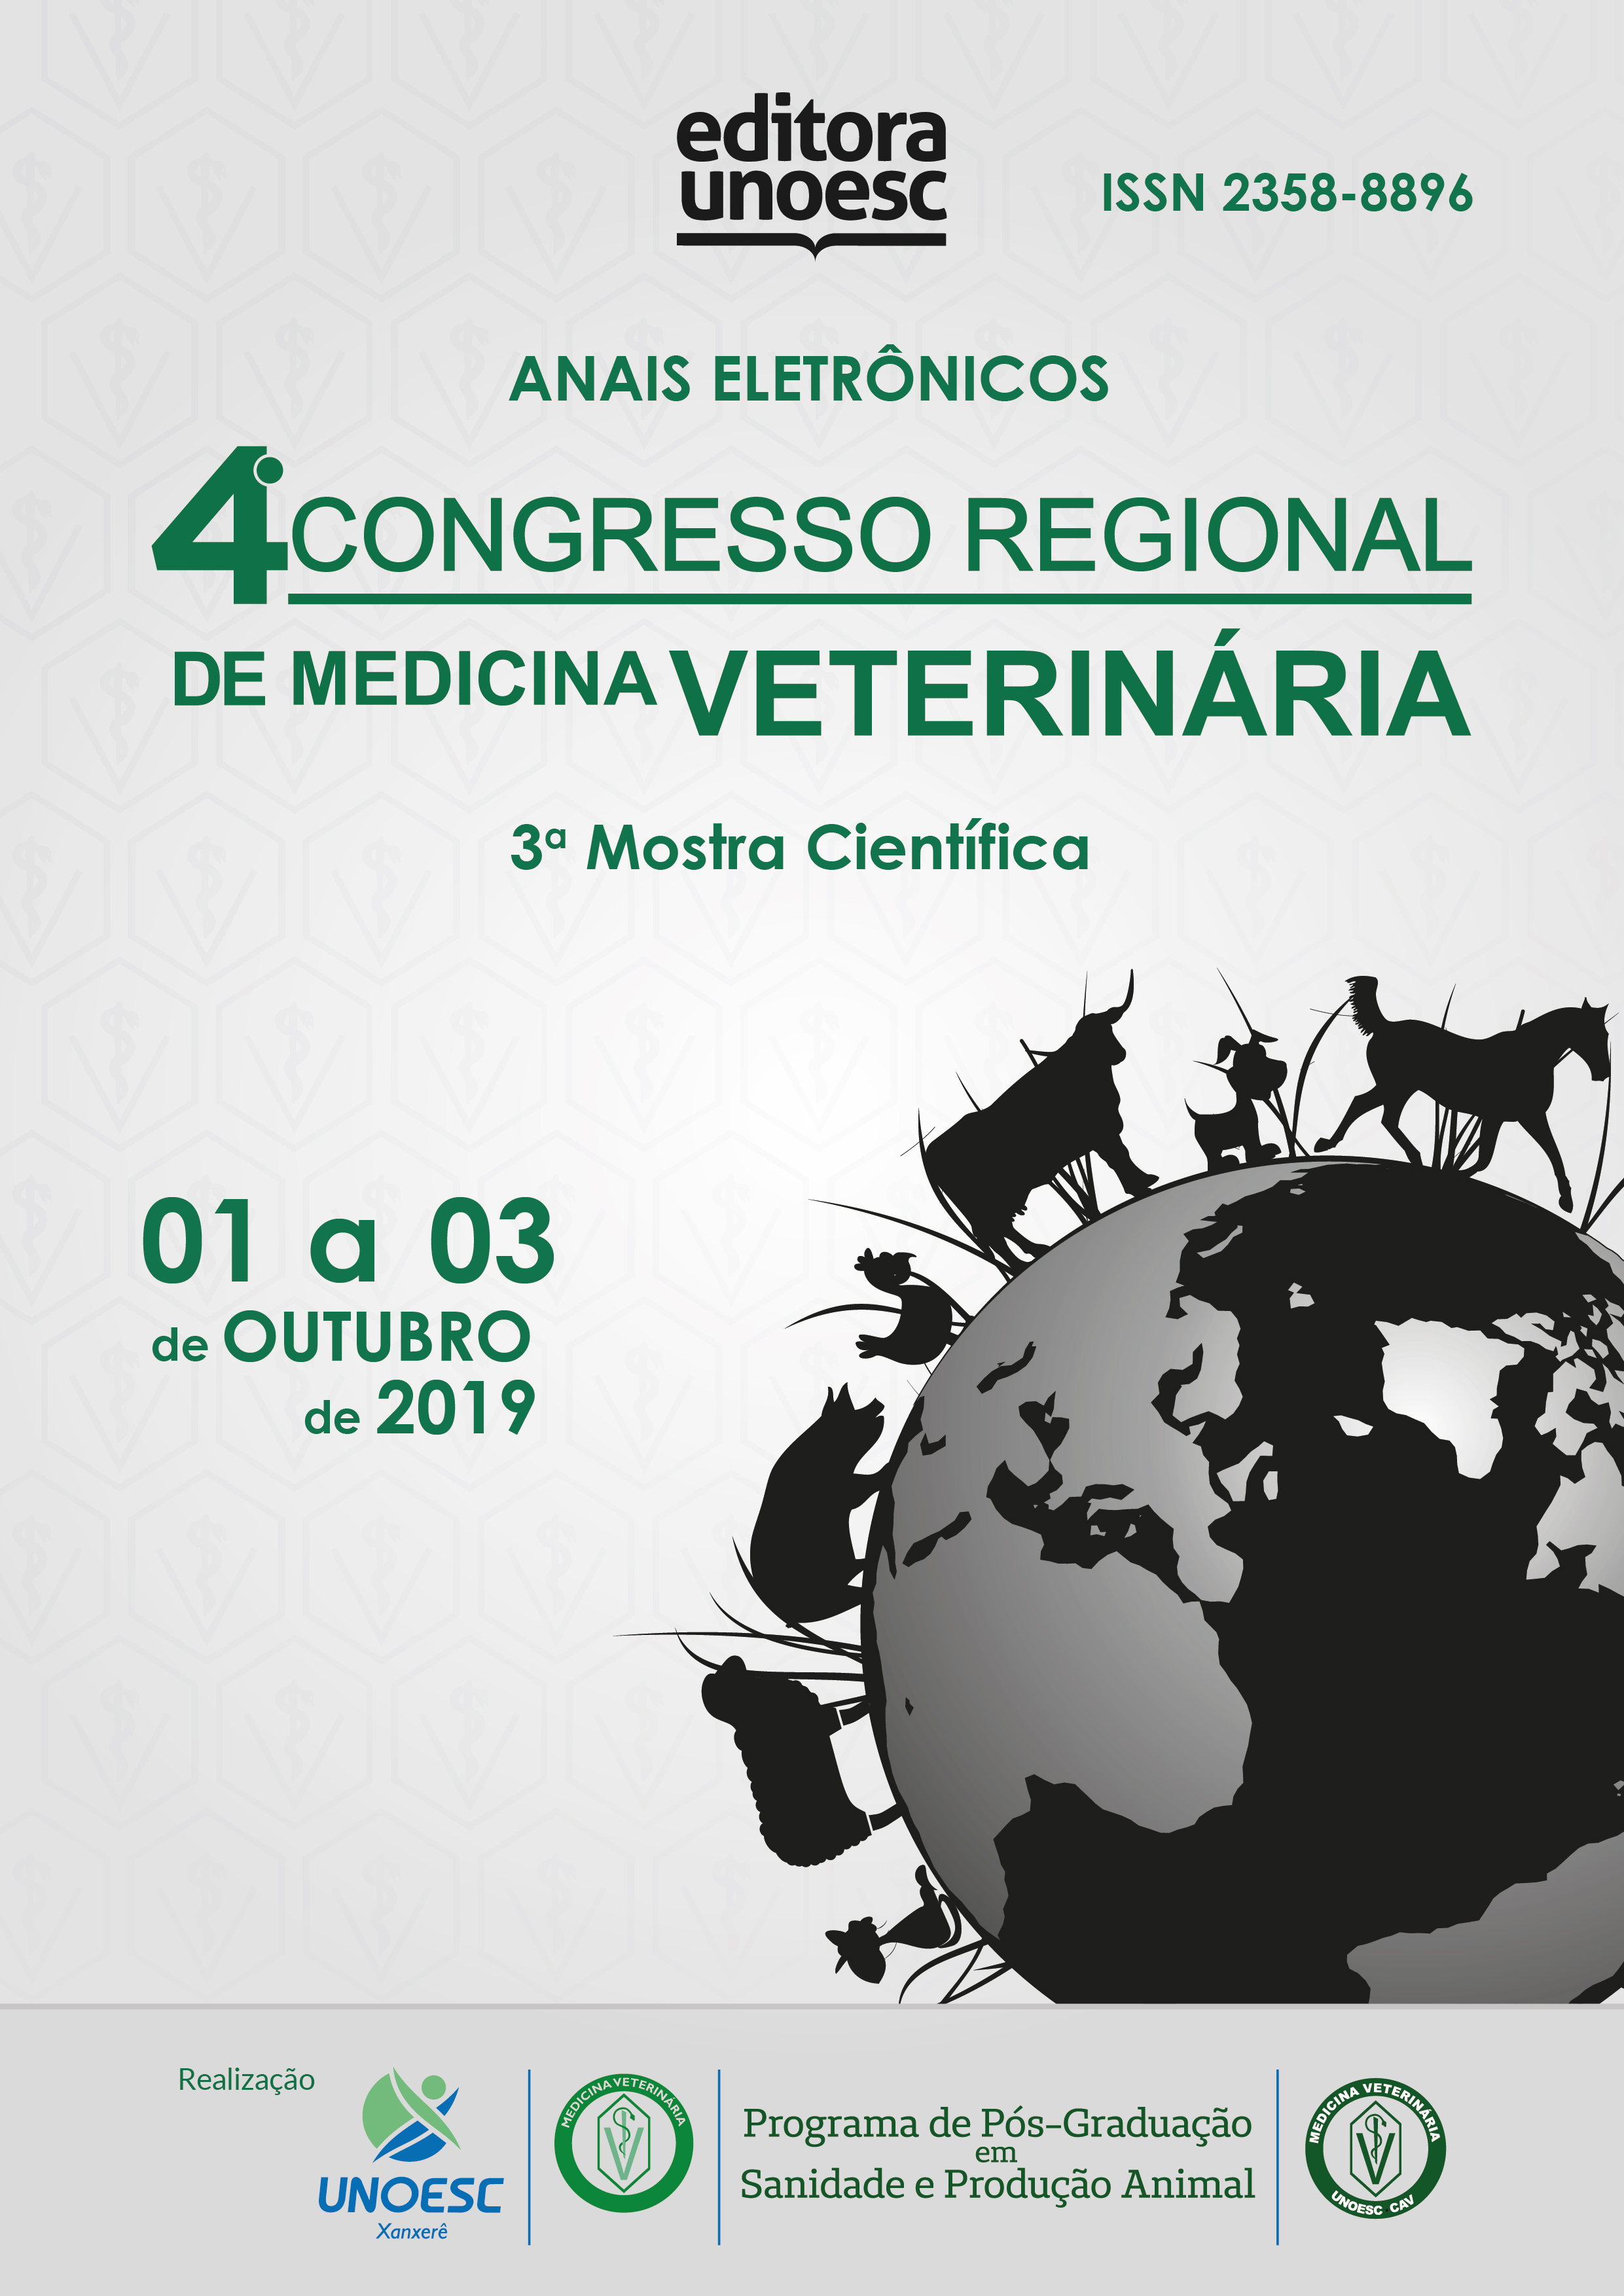 					Visualizar 2019: Congresso Regional de Medicina Veterinária – anais eletrônicos
				